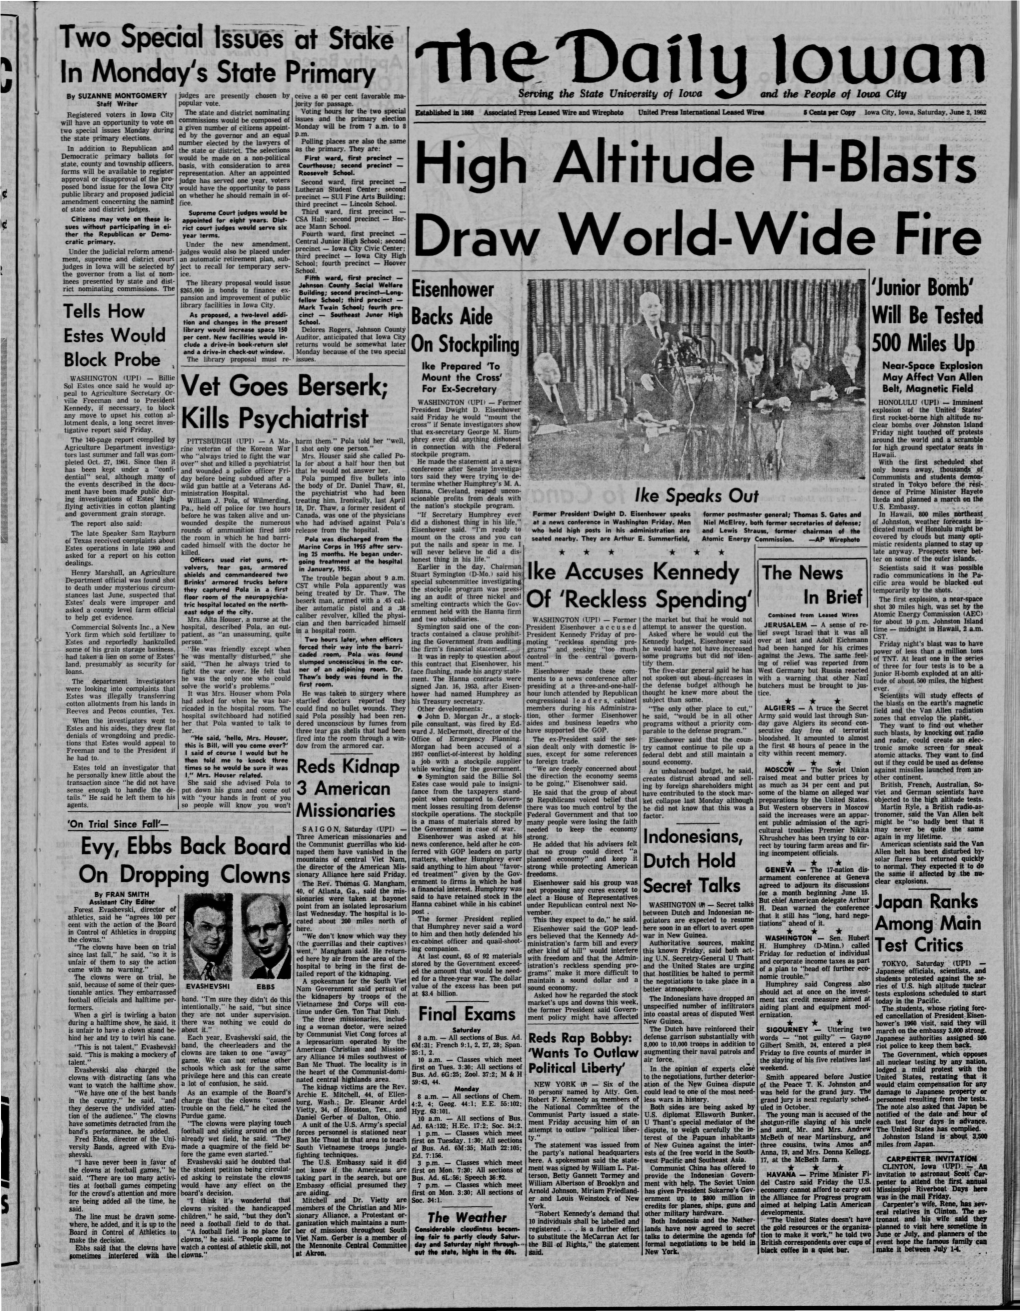 Daily Iowan (Iowa City, Iowa), 1962-06-02